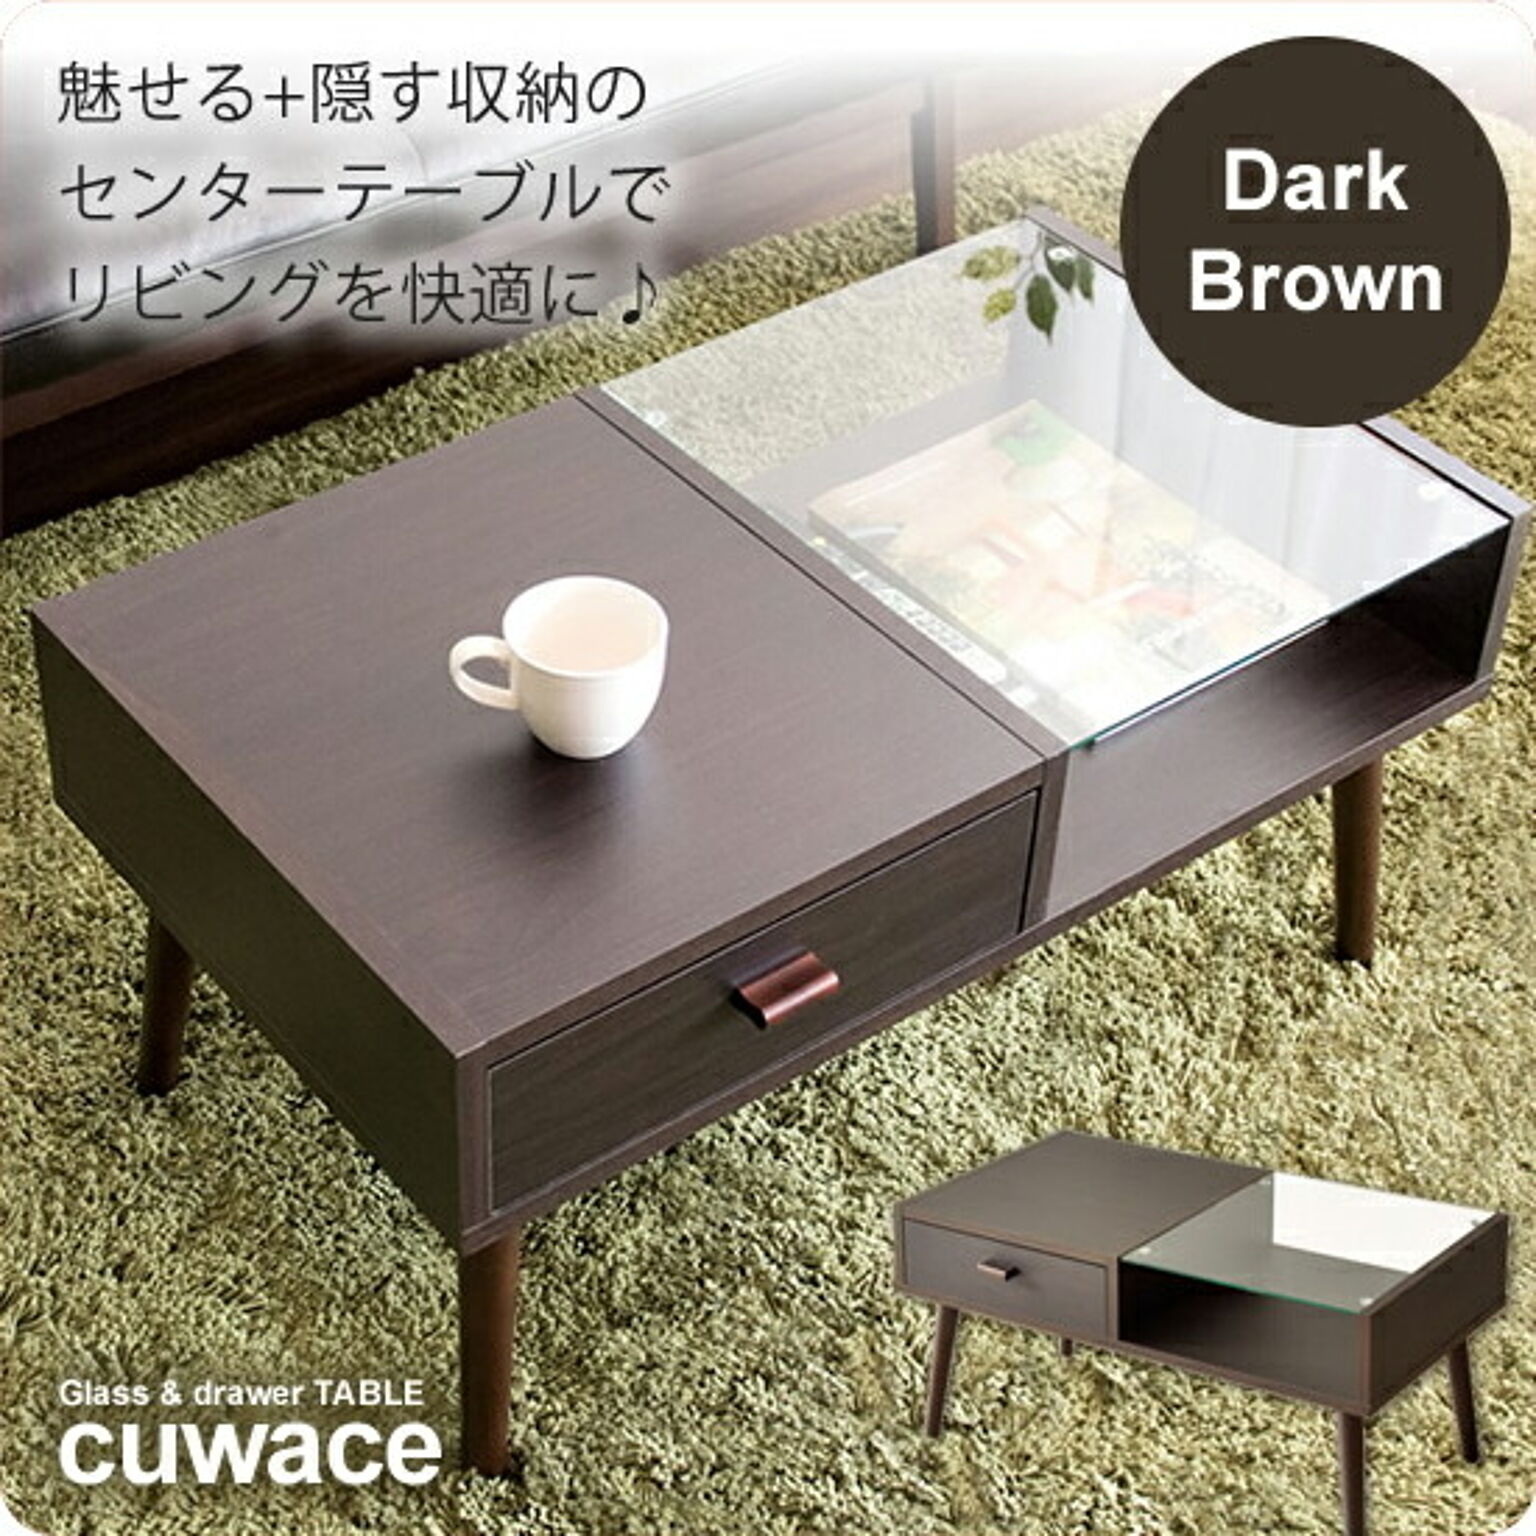 cuwace ガラステーブル ダークブラウン コーヒーテーブル リビングテーブル